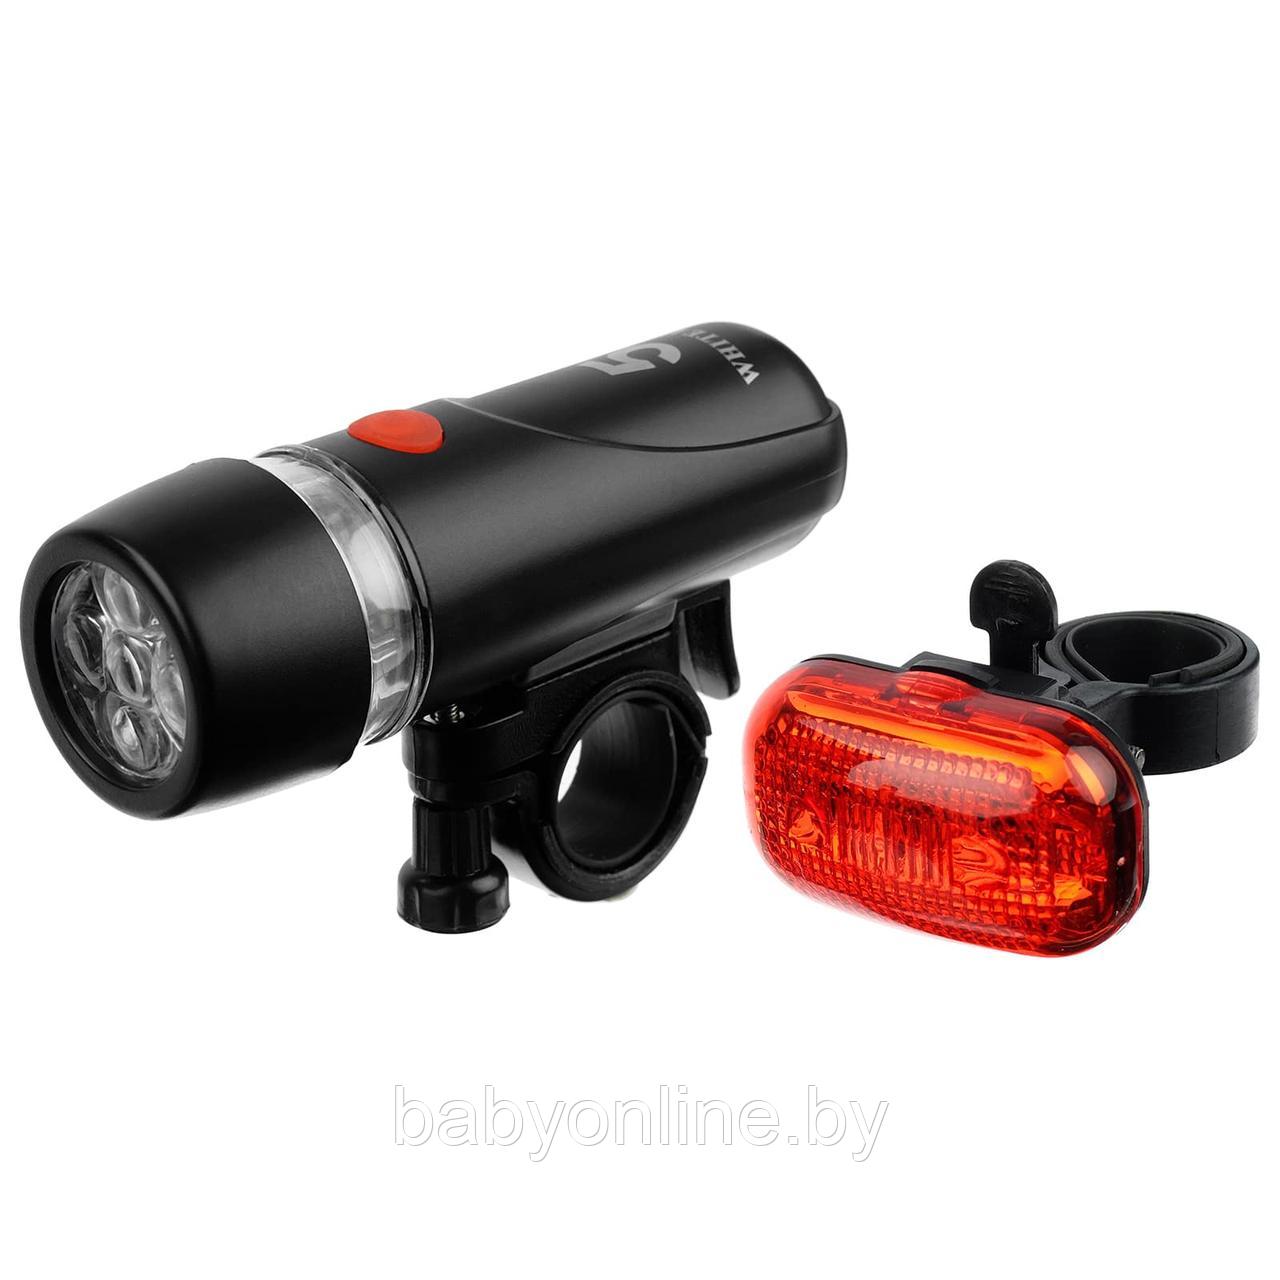 Комплект фонарей для велосипеда передний / задний JY-808C+JY-289T